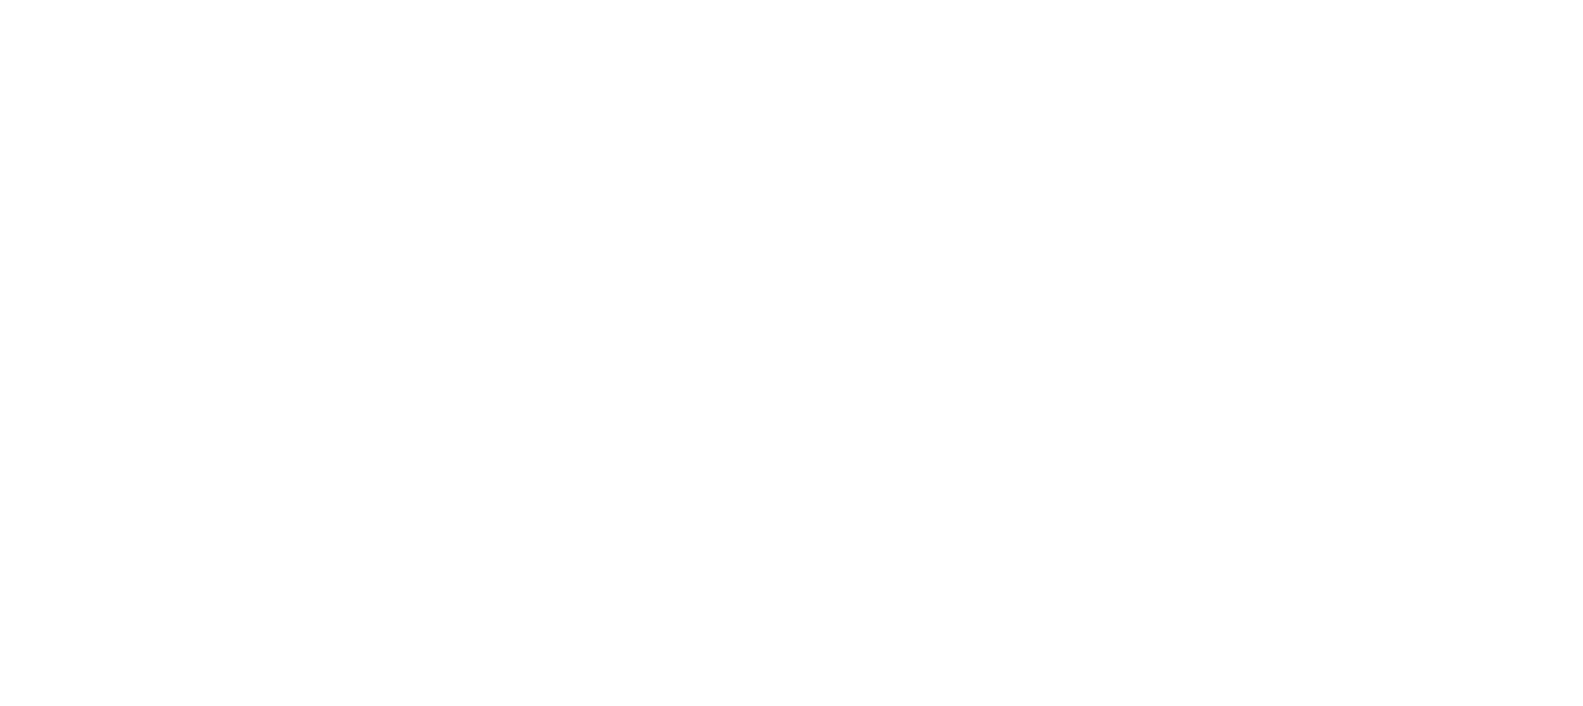 Air Transport Services Group logo pour fonds sombres (PNG transparent)